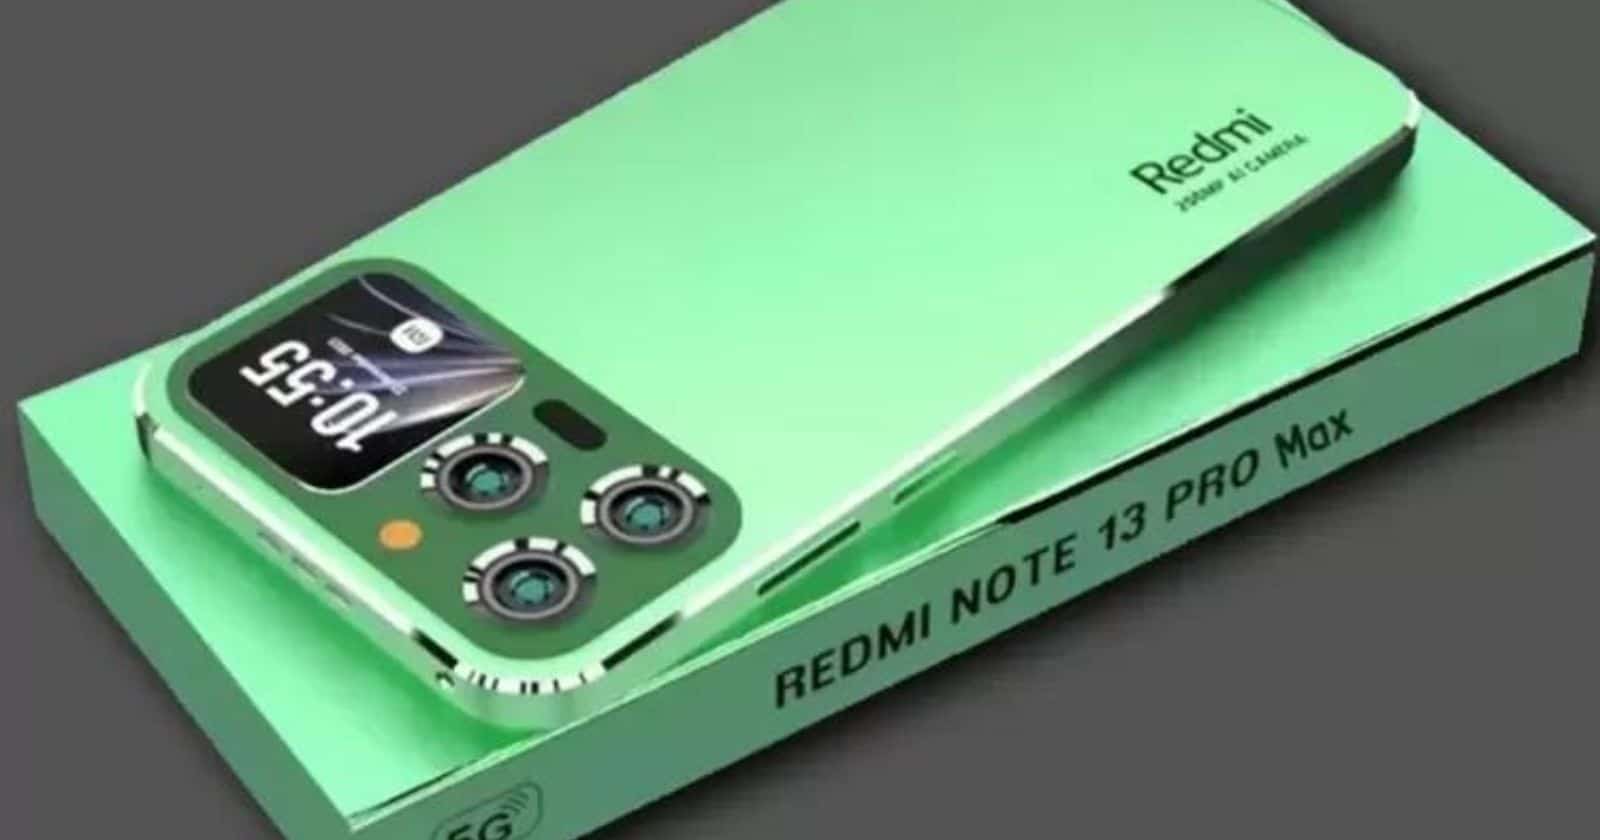 Spesifikasi Redmi Note 13 Pro Smartphone Terbaru dengan Performa dan Inovasi Luar Biasa